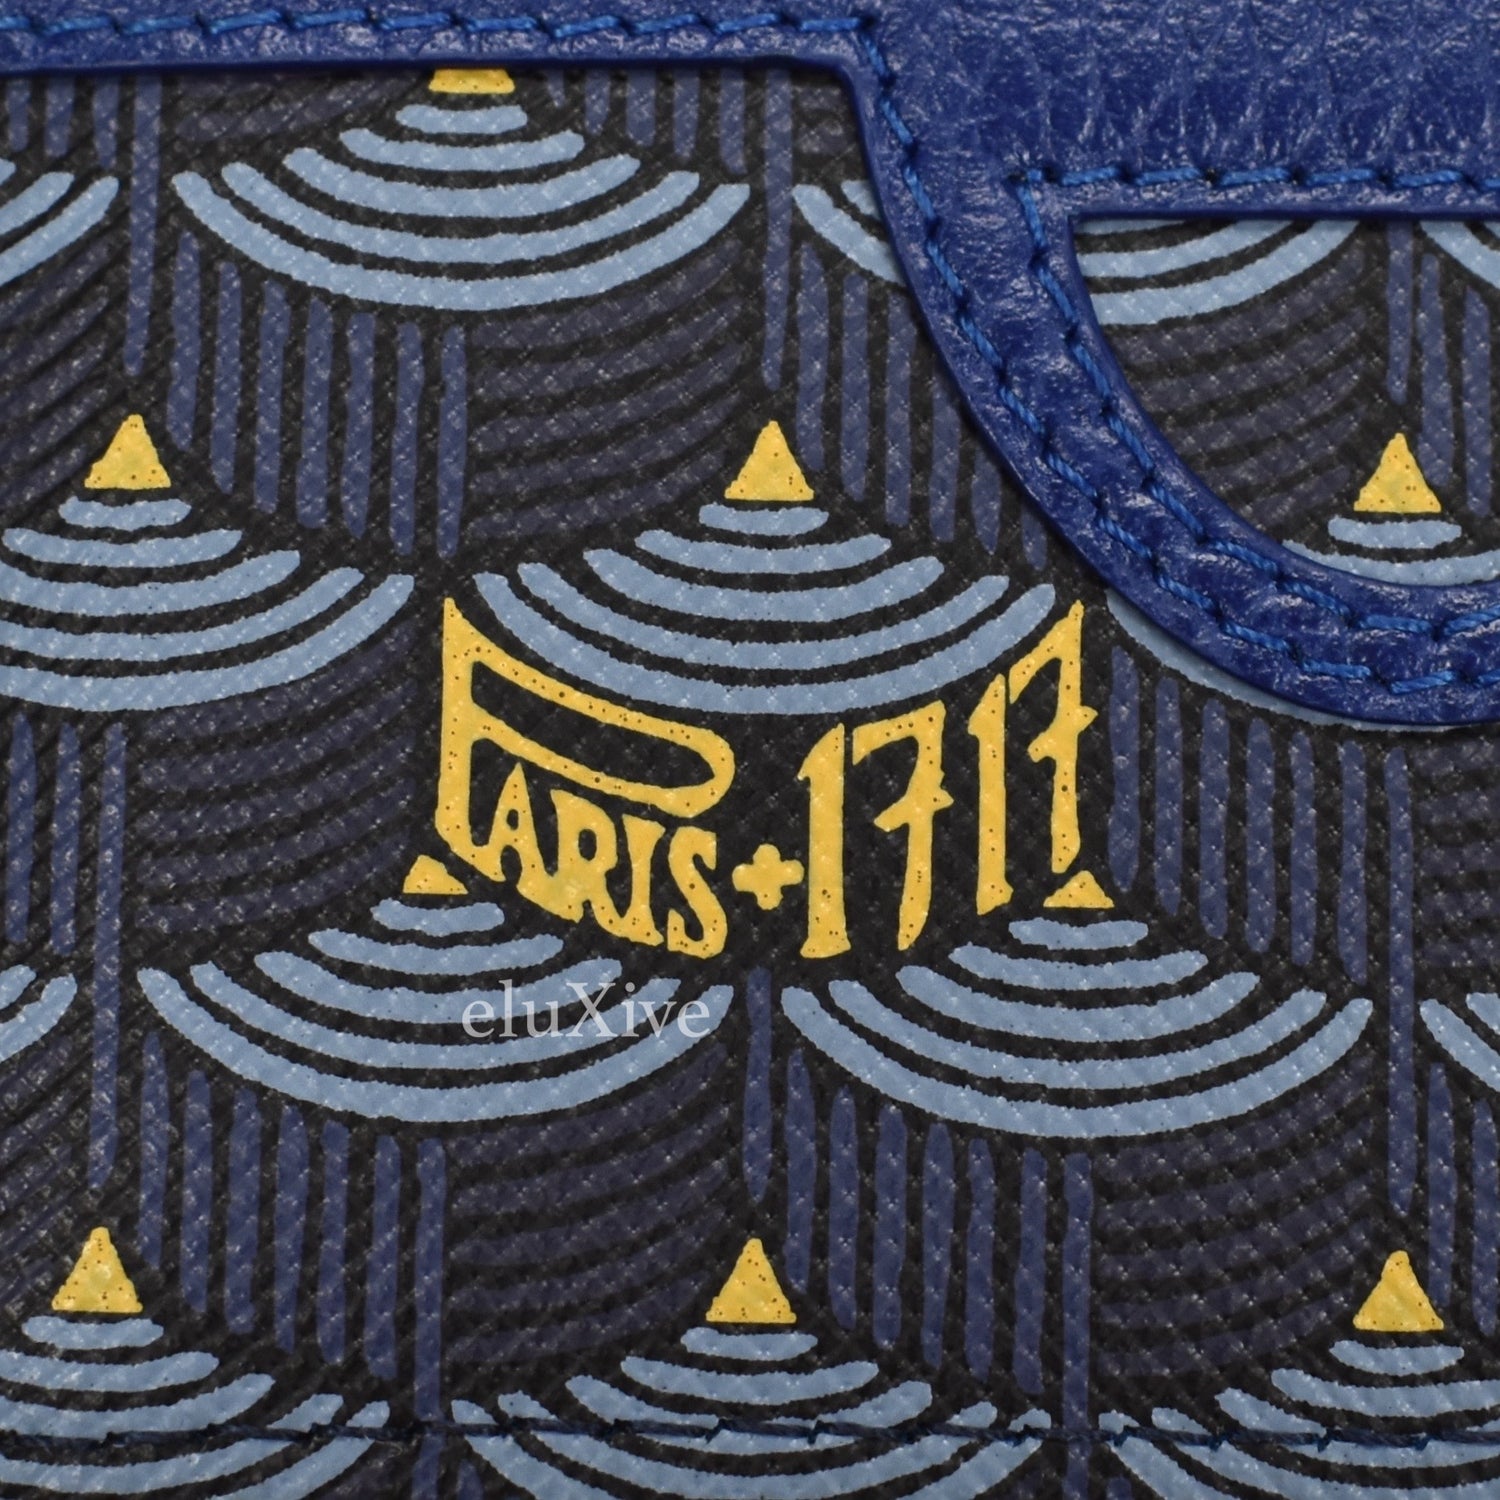 Fauré Le Page - Etendard 4cc Card Holder - Paris Blue Scale Canvas & Navy Leather